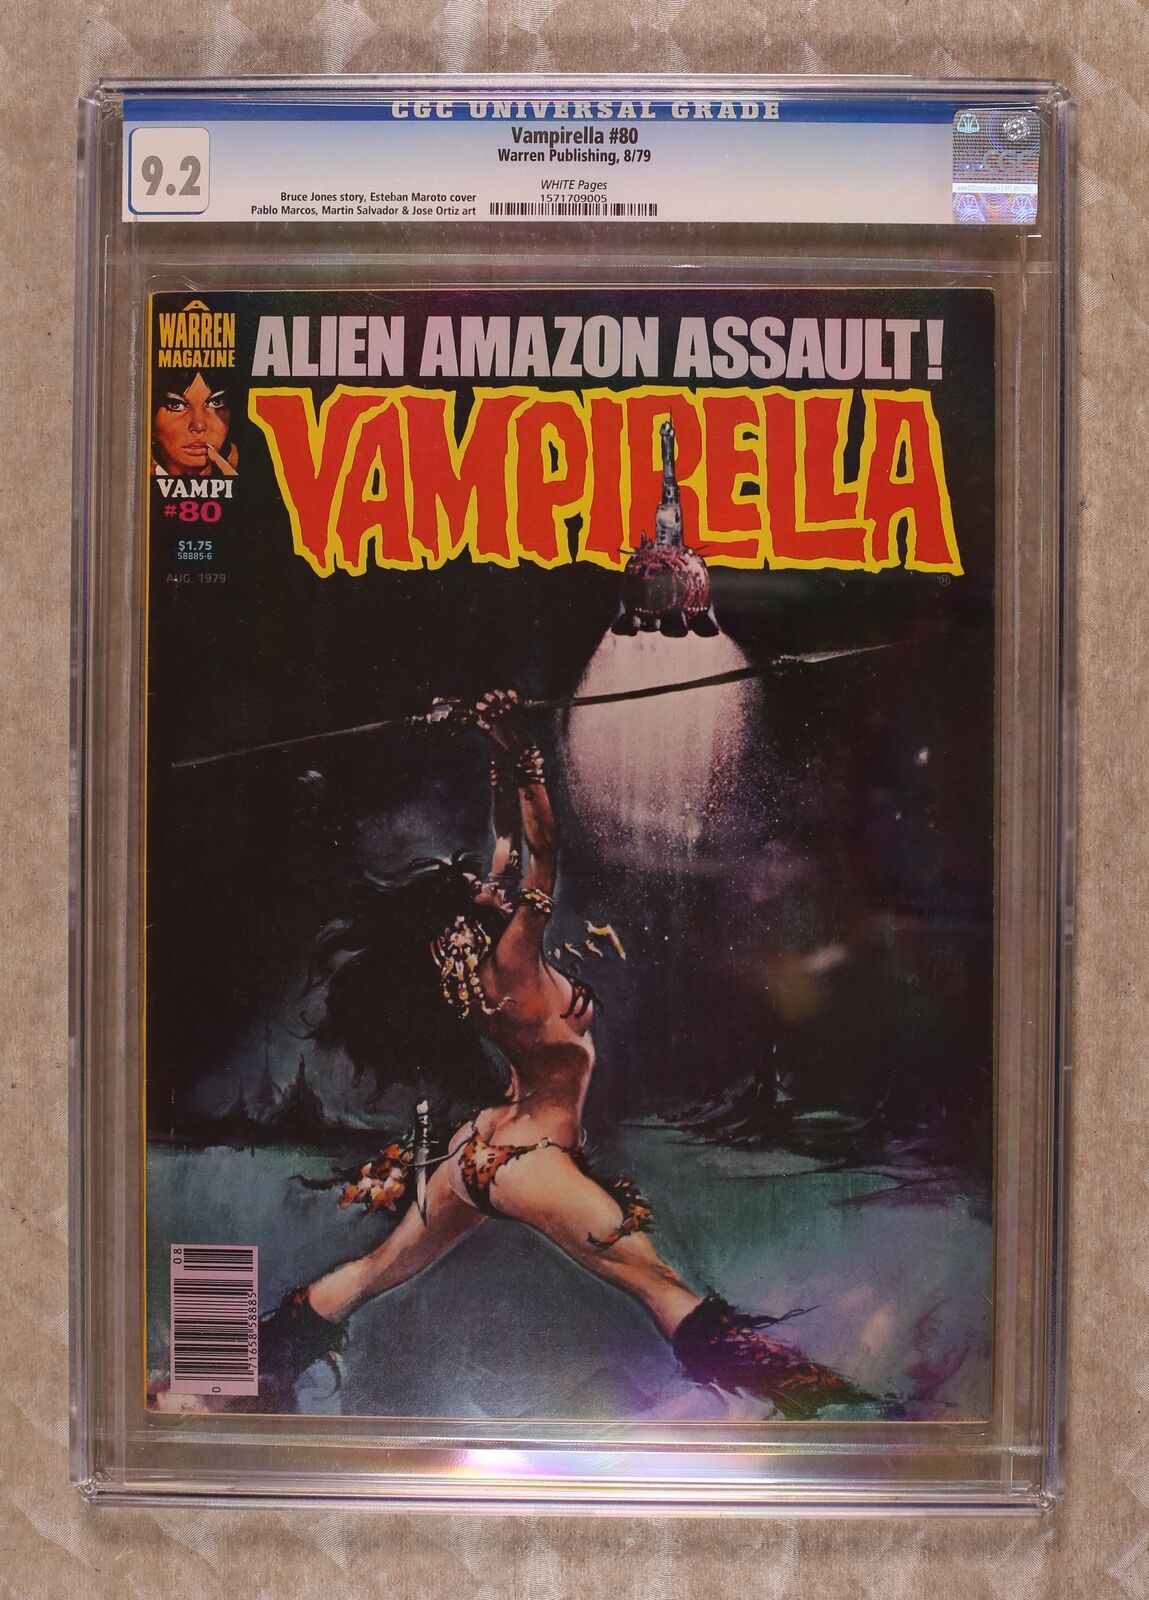 Vampirella #80 CGC 9.2 1979 1571709005